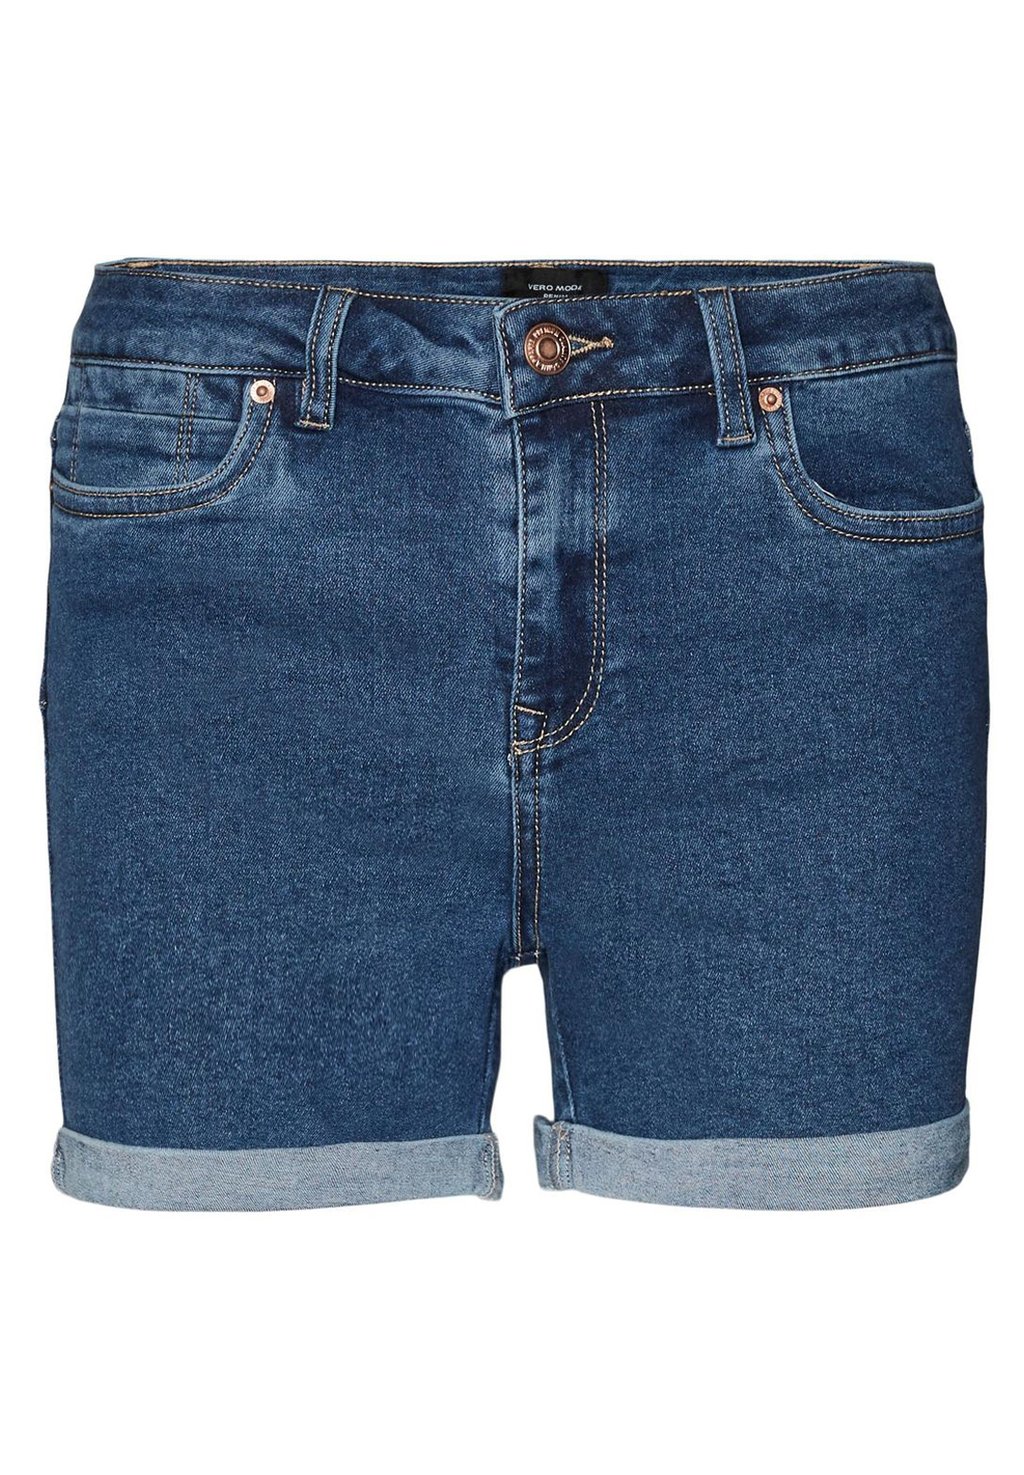 Джинсовые шорты Vero Moda голубые джинсовые шорты mom vero moda